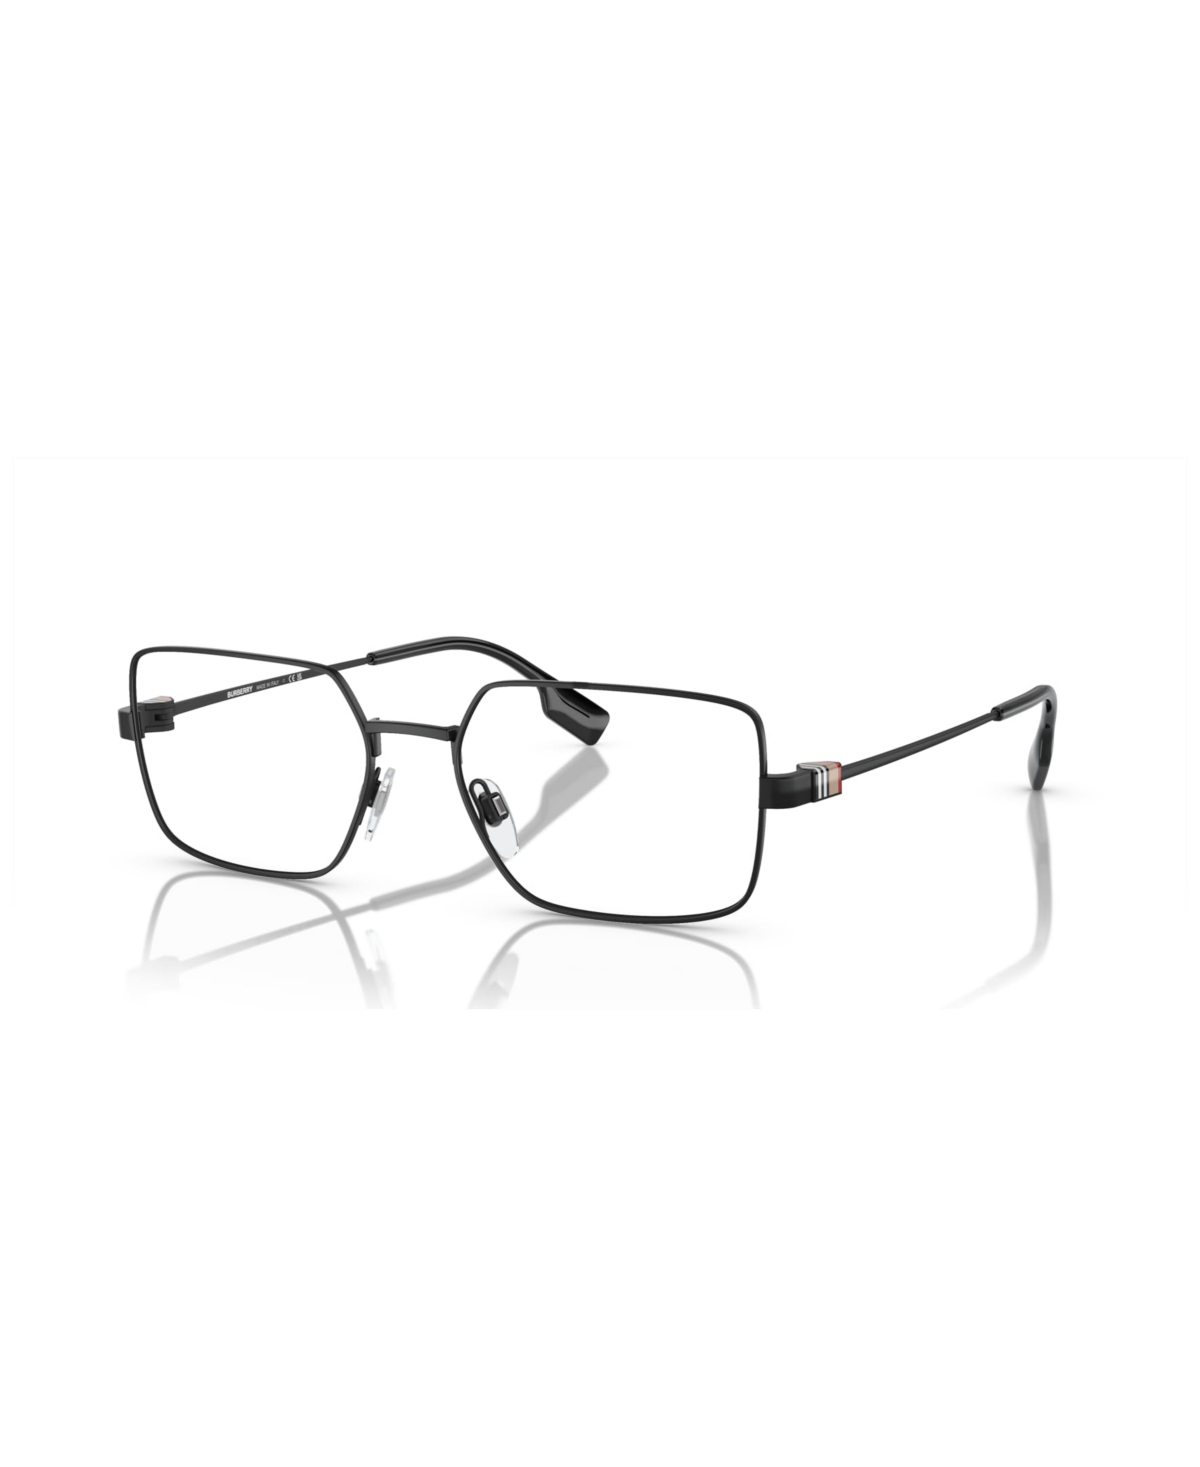 Men's Eyeglasses, BE1380 - Black